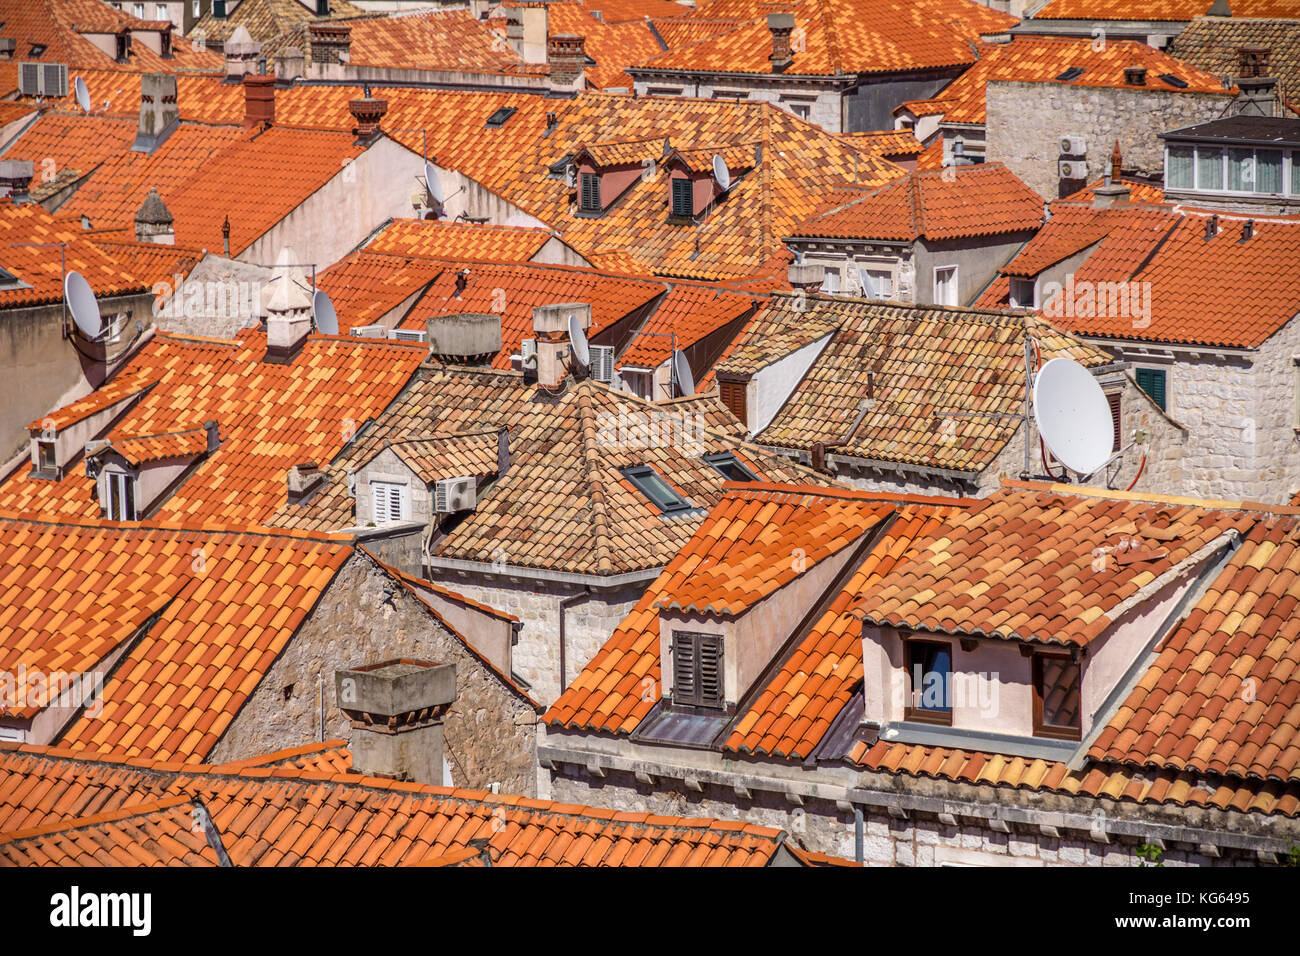 Zoom in avanti su un patchwork di luminose tetti in terracotta, la città vecchia di Dubrovnik. finestre con persiane e parabole satellitari portare visualizzare dati aggiornati. Croazia Foto Stock